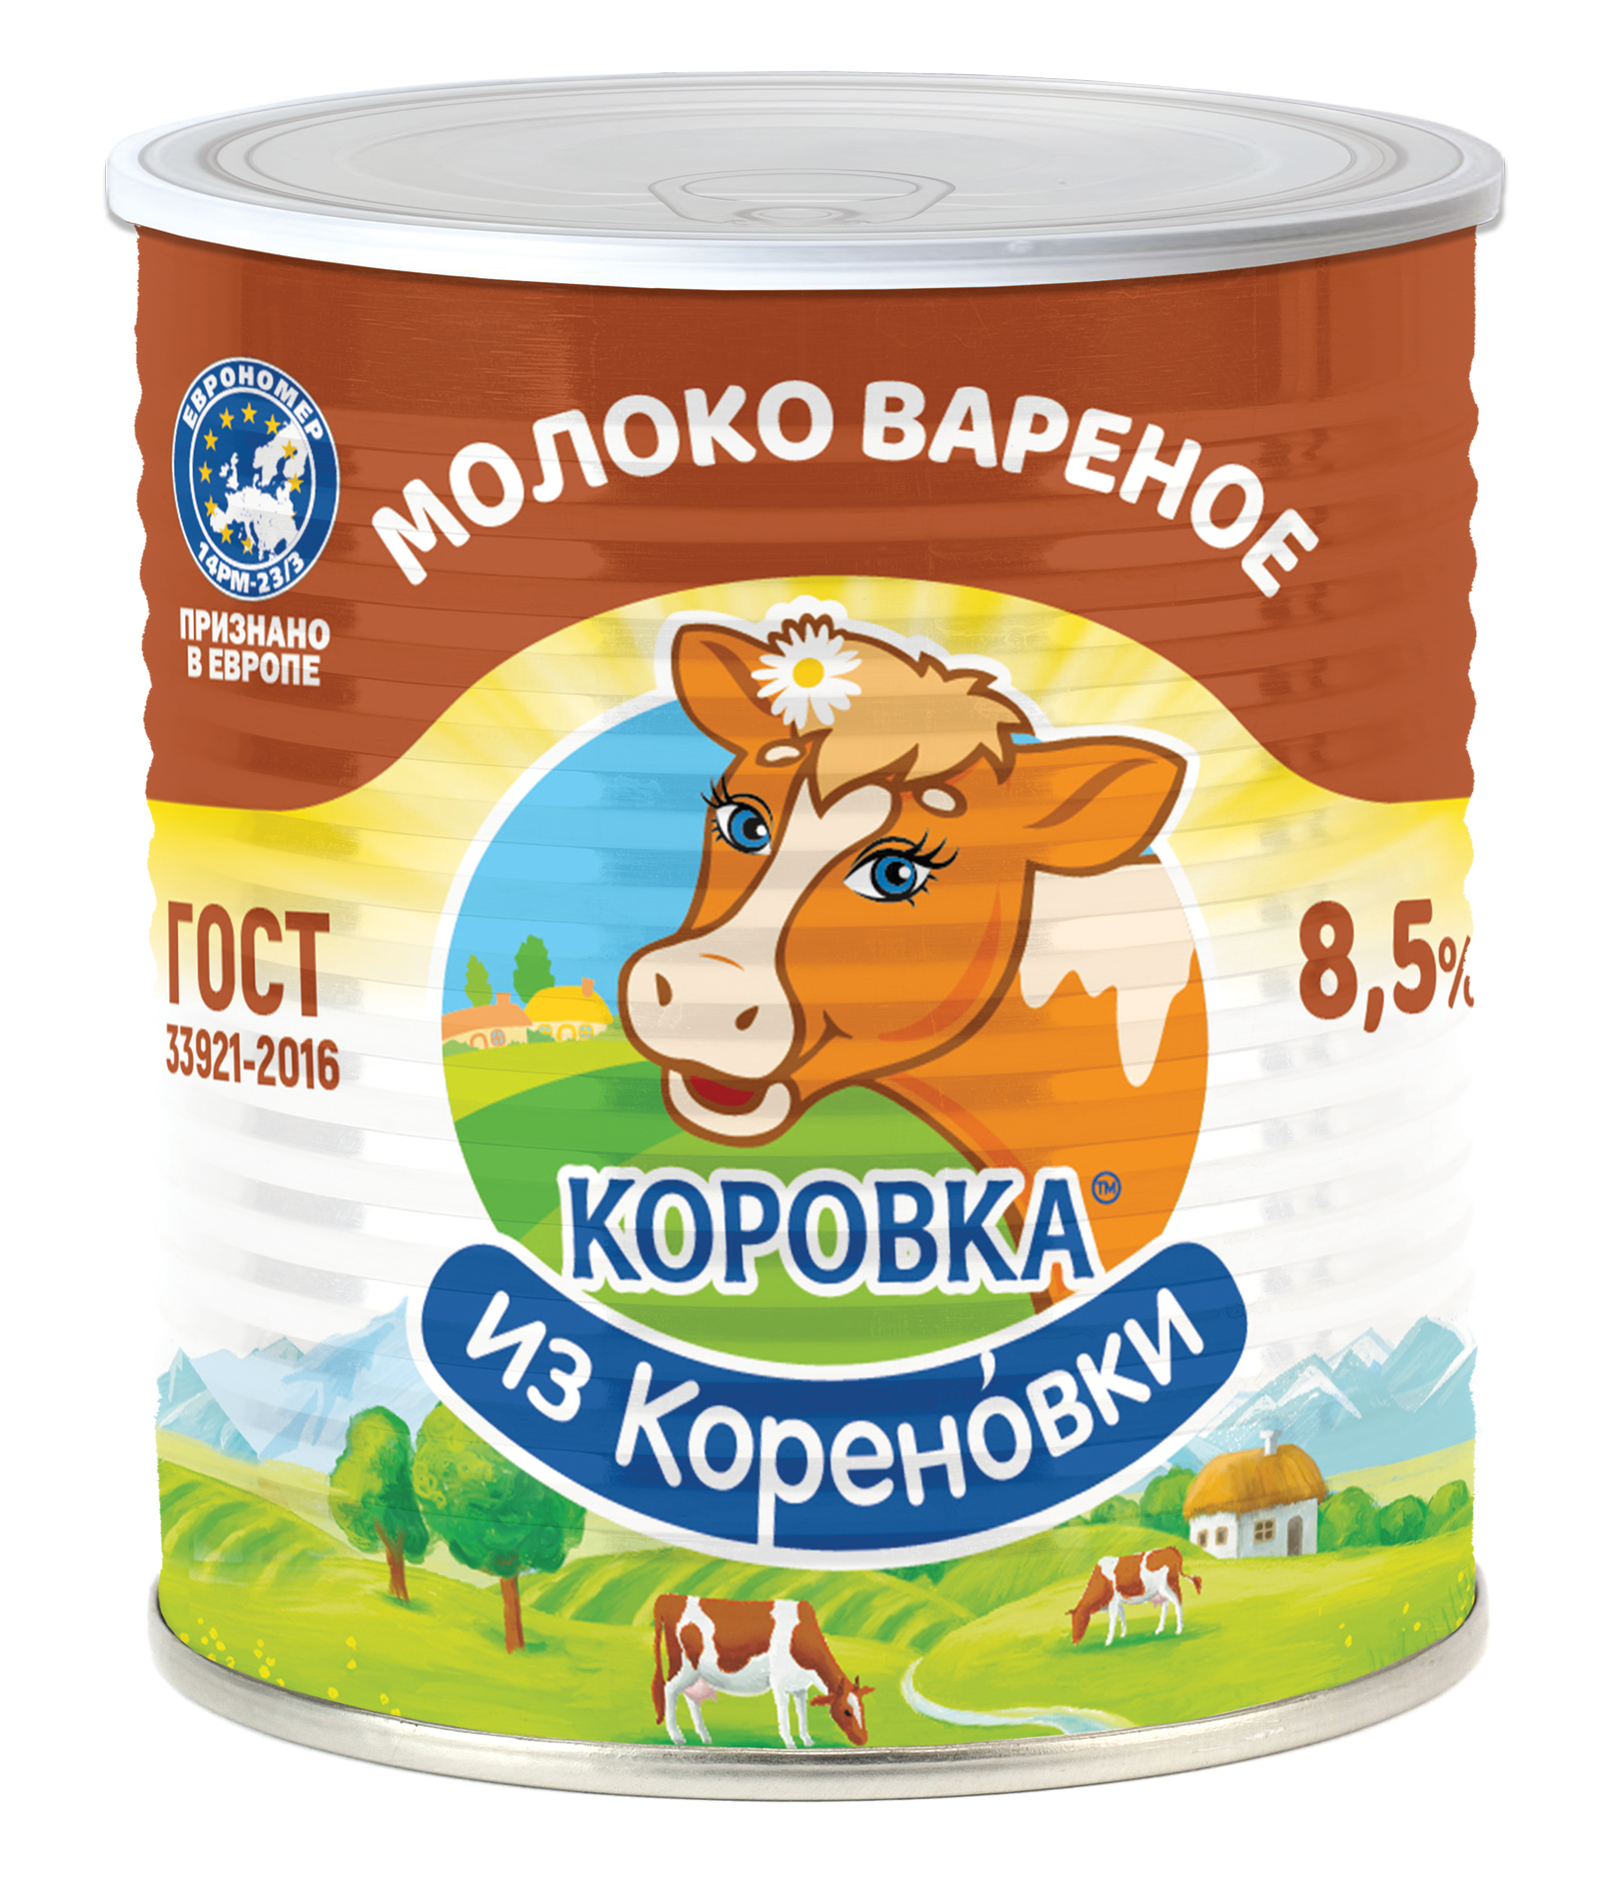 Сгущенное вареное молоко Коровка из Кореновки 8,5% 360 г